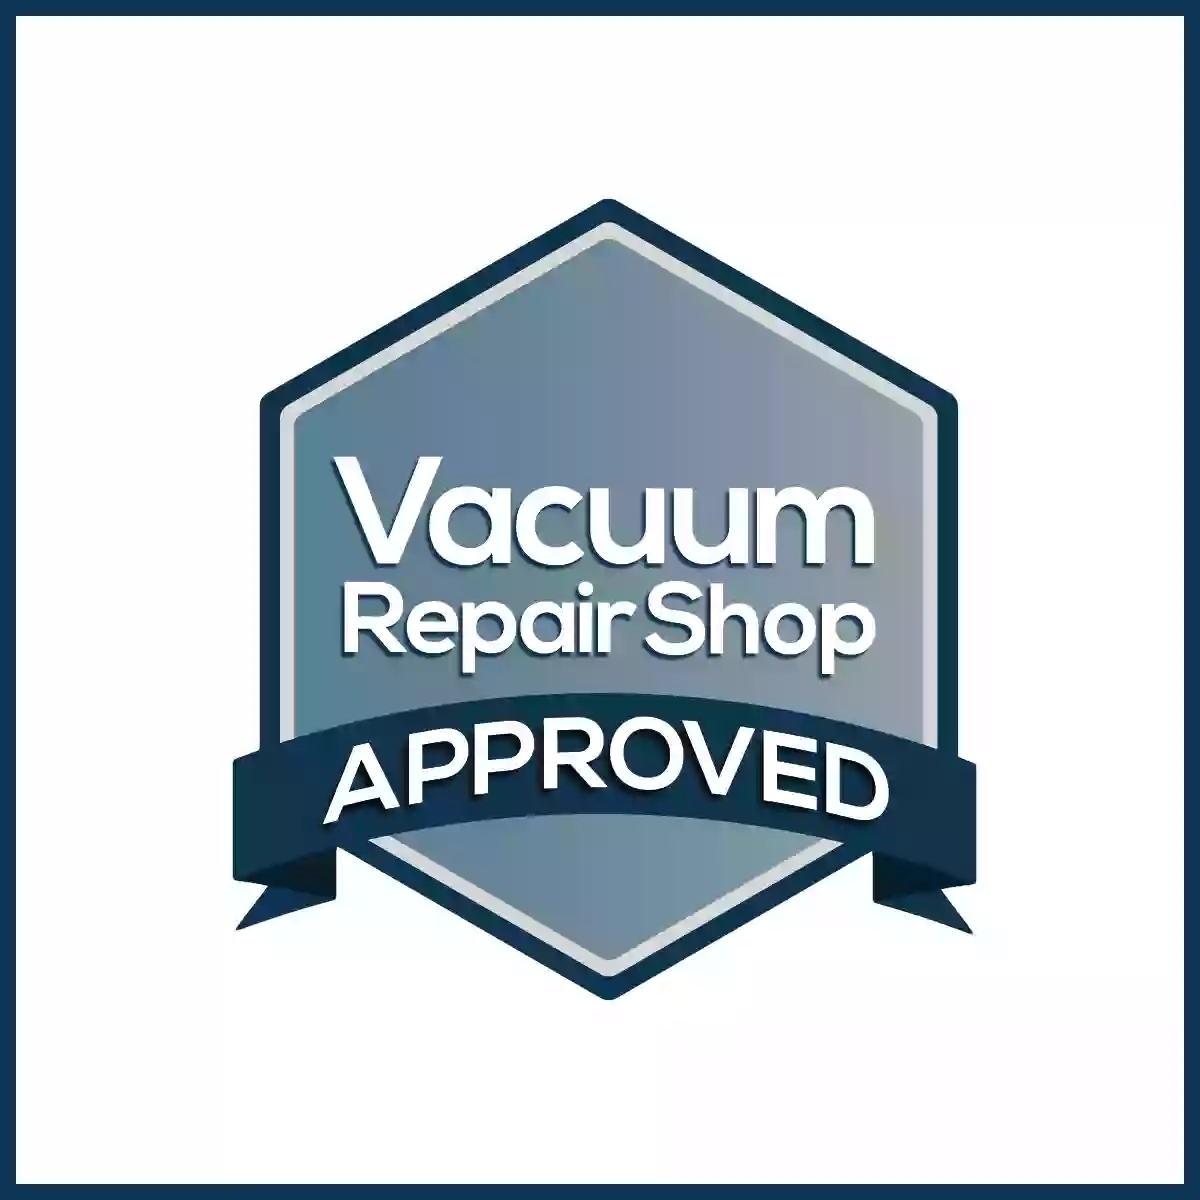 VacuumRepairShop.com